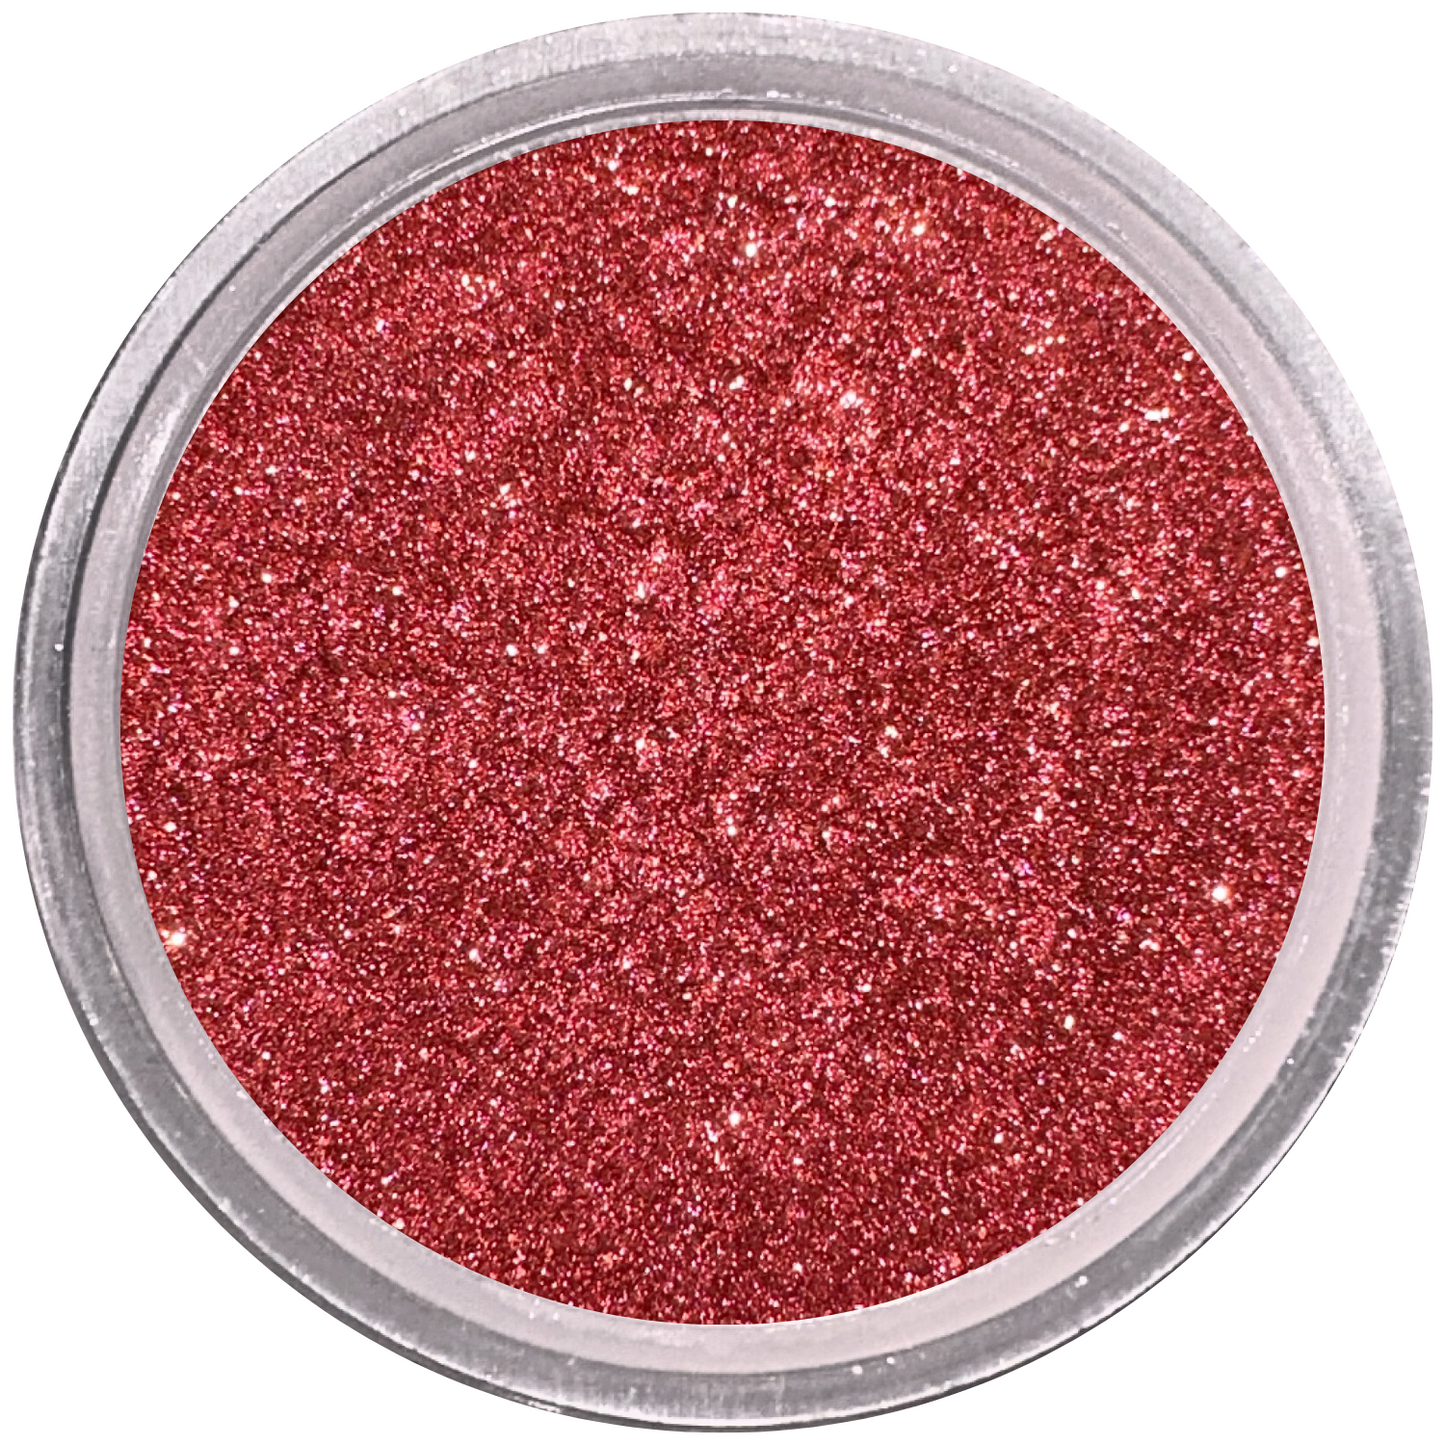 Star Ruby Loose Powder Mineral Eyeshadow Single 3g